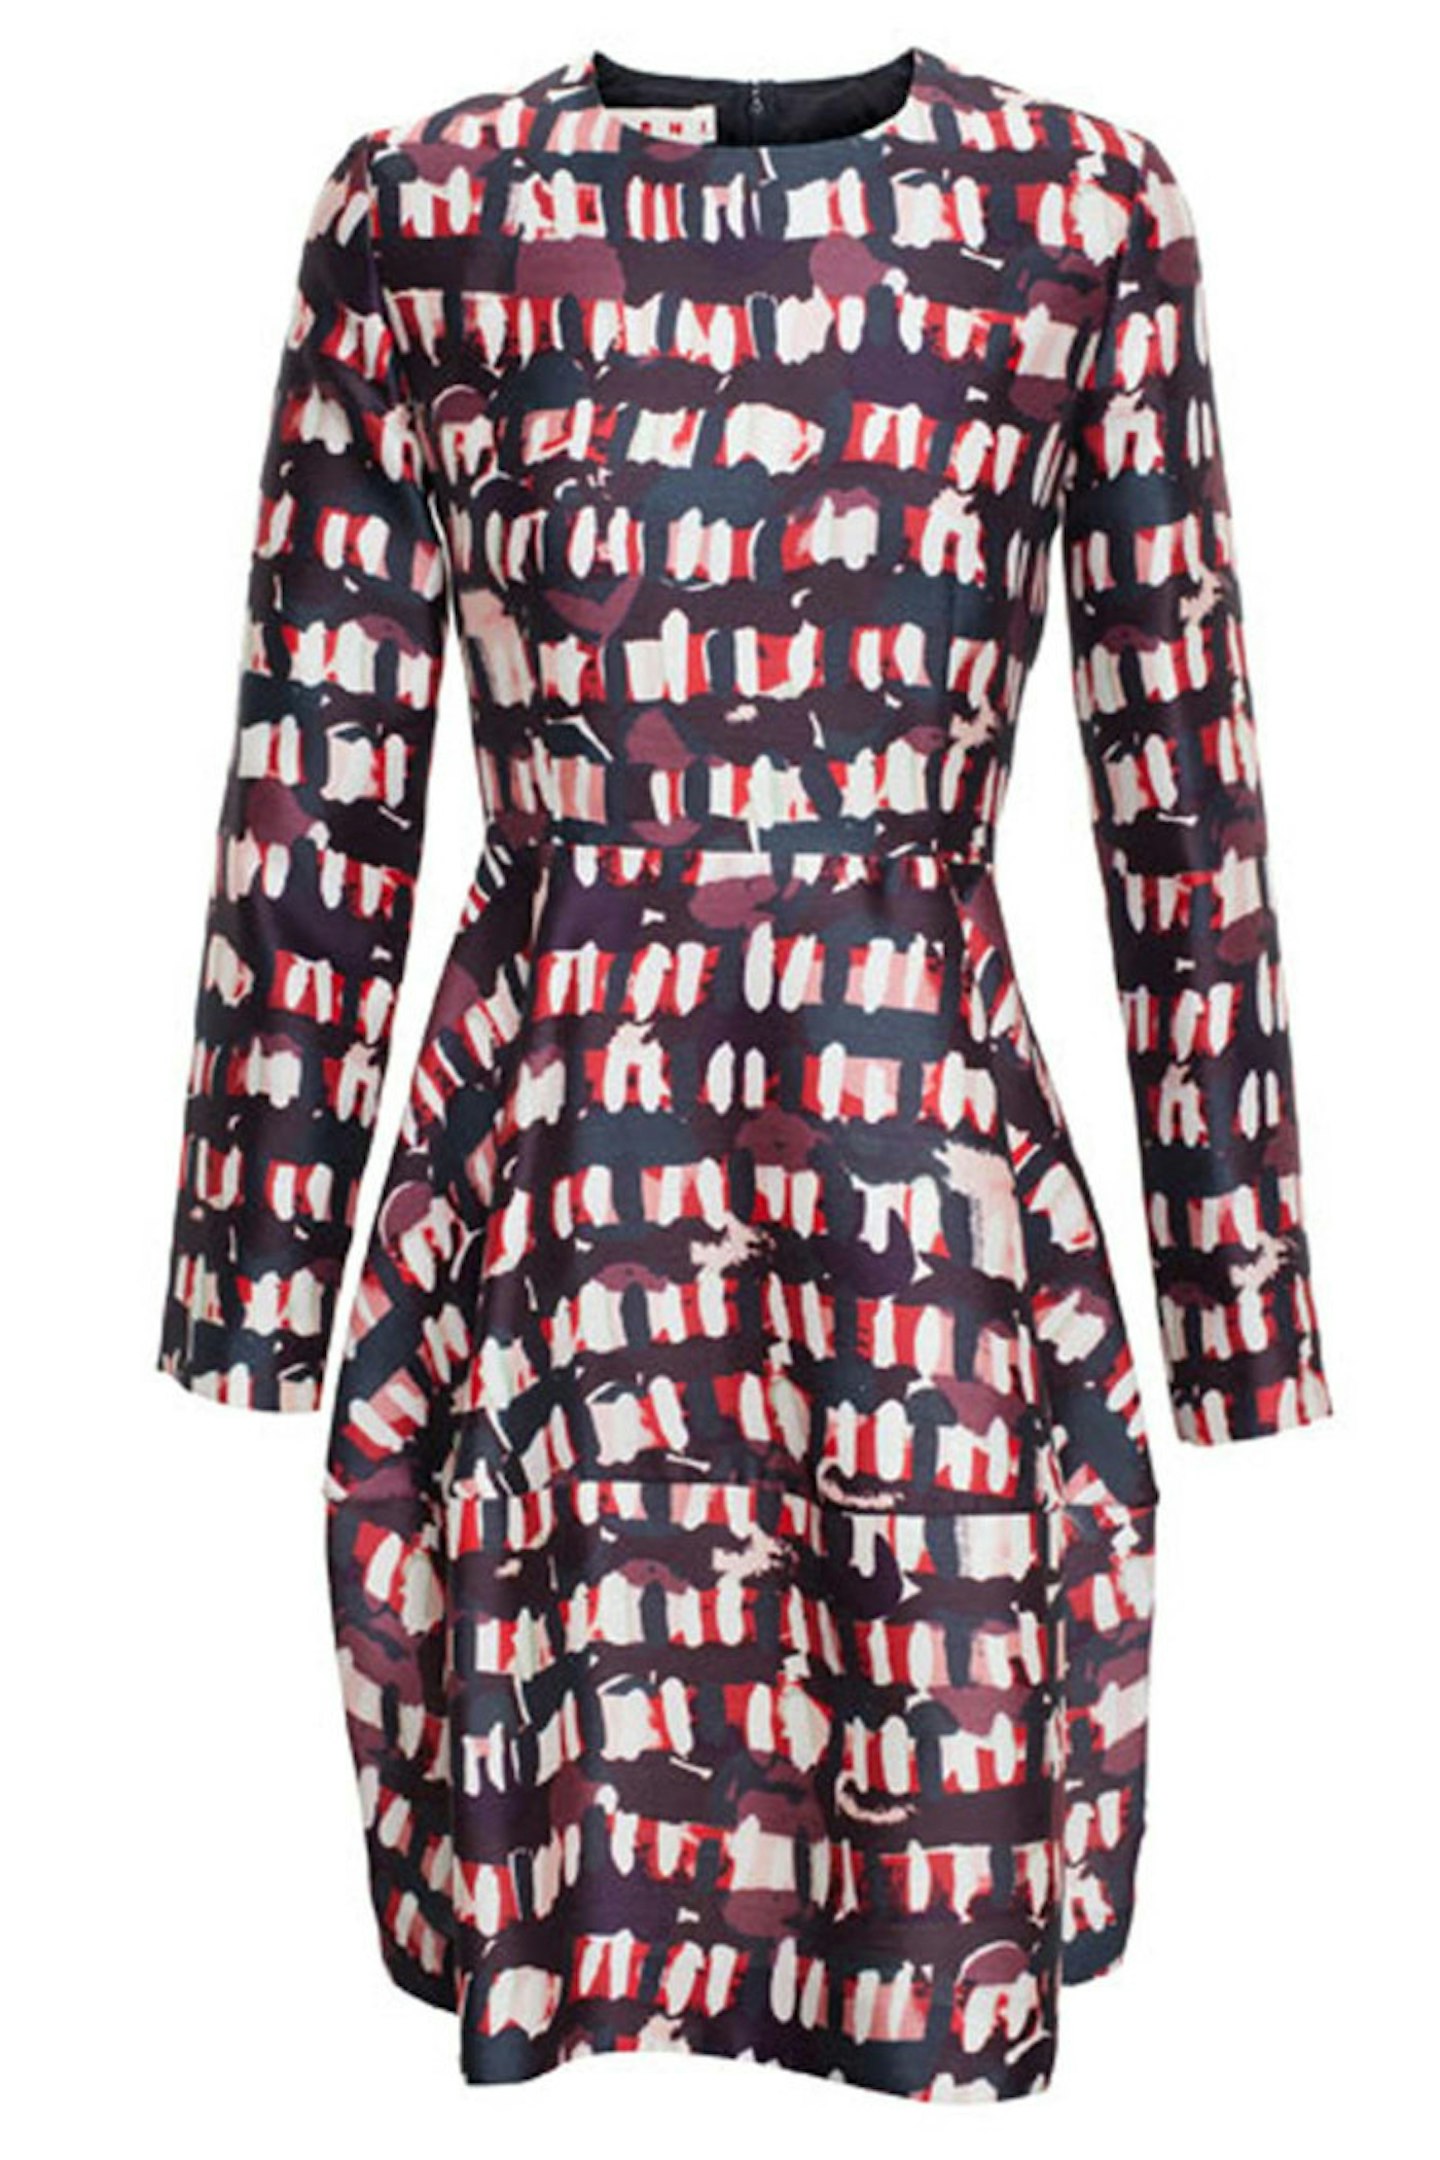 Long Sleeved Printed Dress, £1150, Marni at Browns